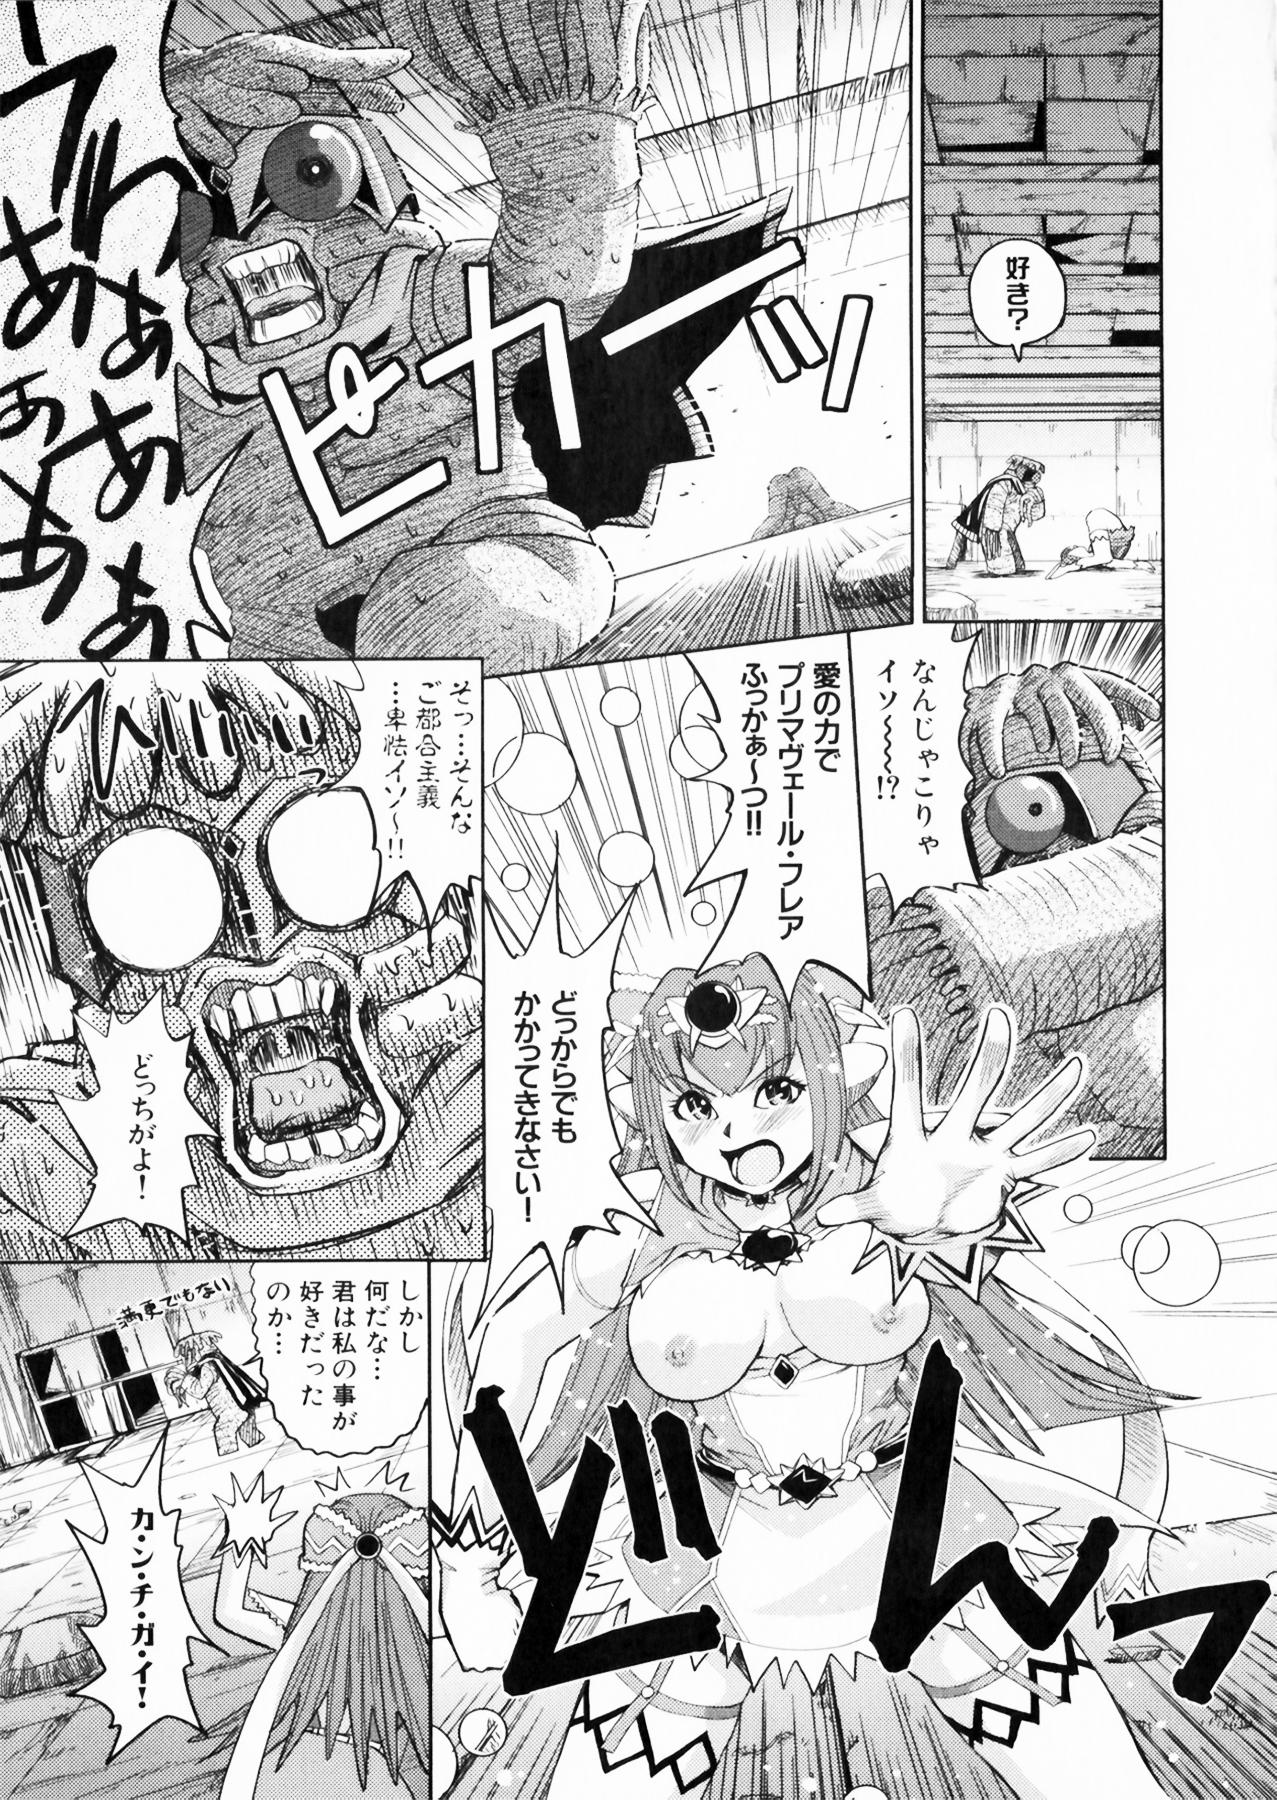 Suisei Tenshi Prima Veil Zwei Anthology Comic EX 147